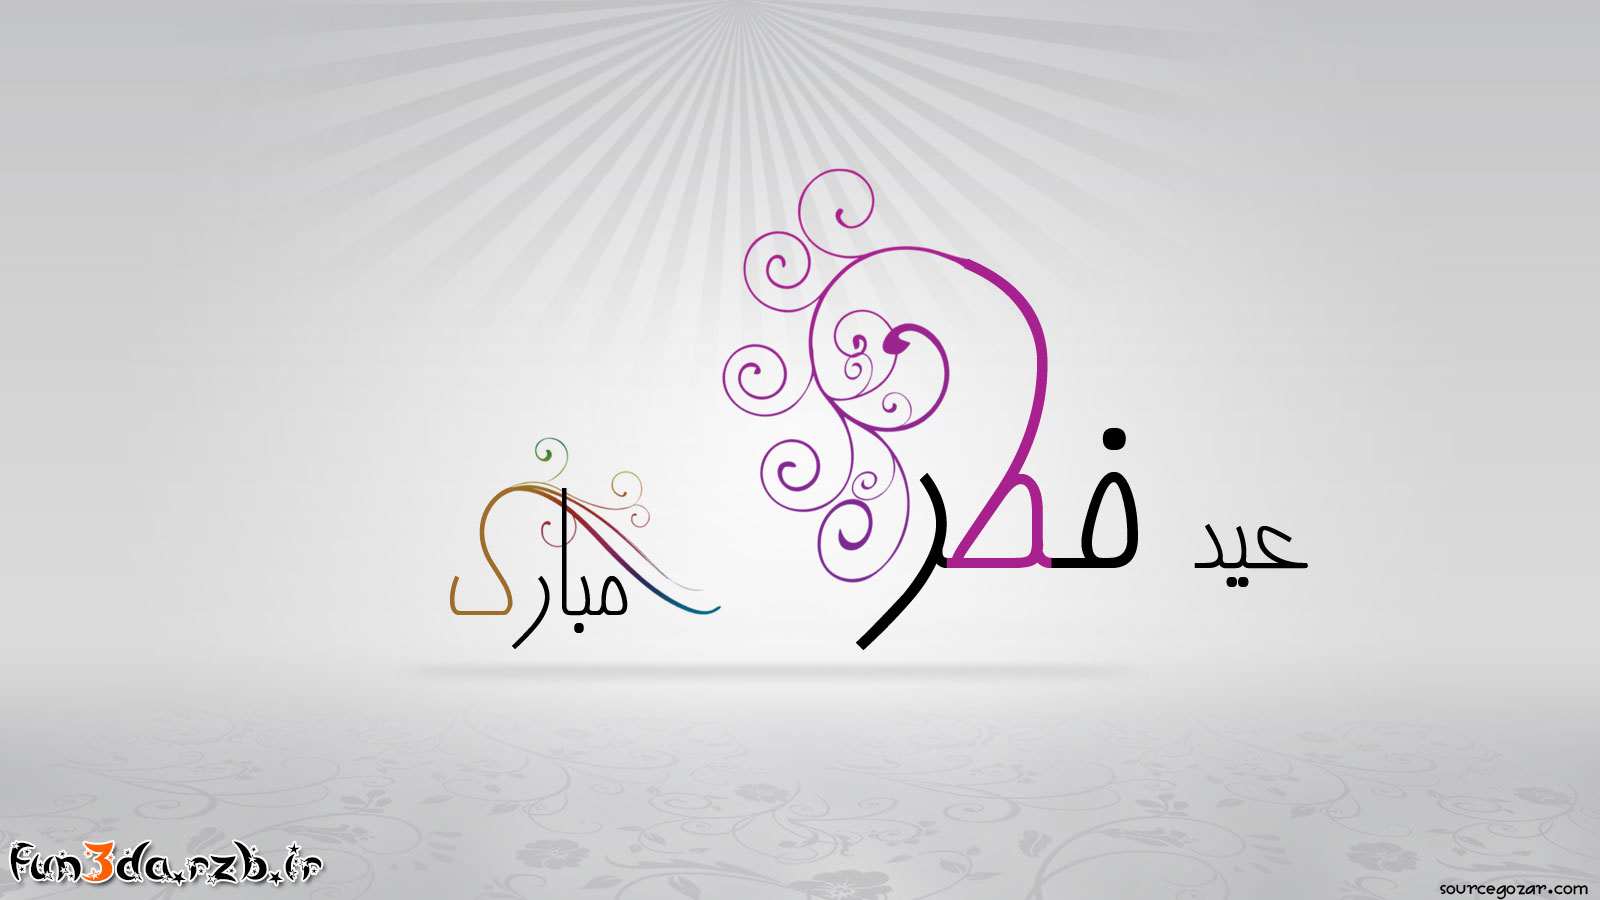 اس ام اس تبریک عید فطر ۹۲